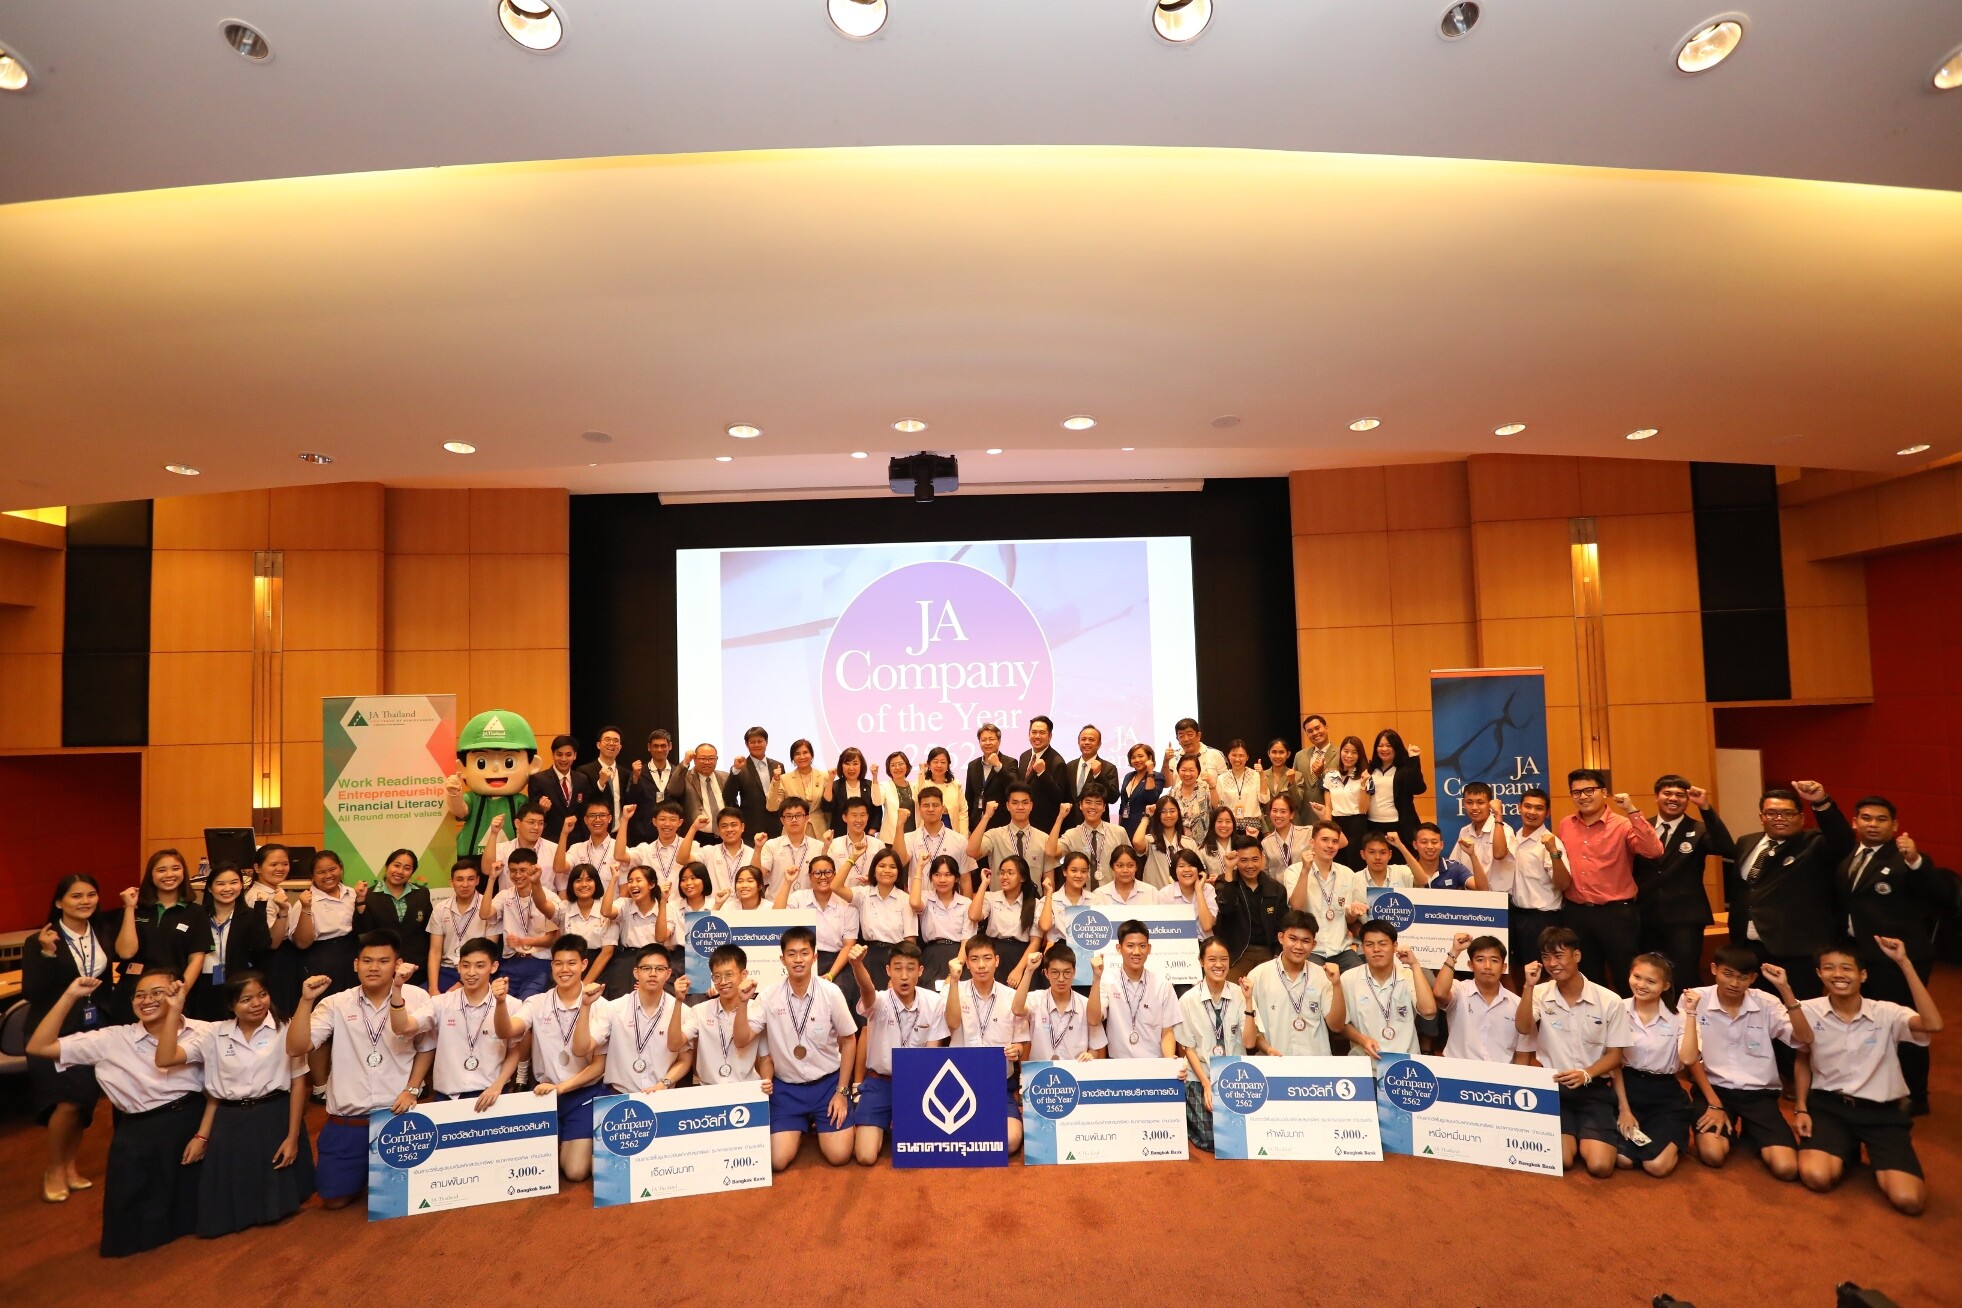 ธนาคารกรุงเทพ ร่วมกับ มูลนิธิจูเนียร์อะชีฟเม้นท์ ประเทศไทย มอบรางวัล 'Company of the Year 2562’ ในโครงการ “JA Company Program”